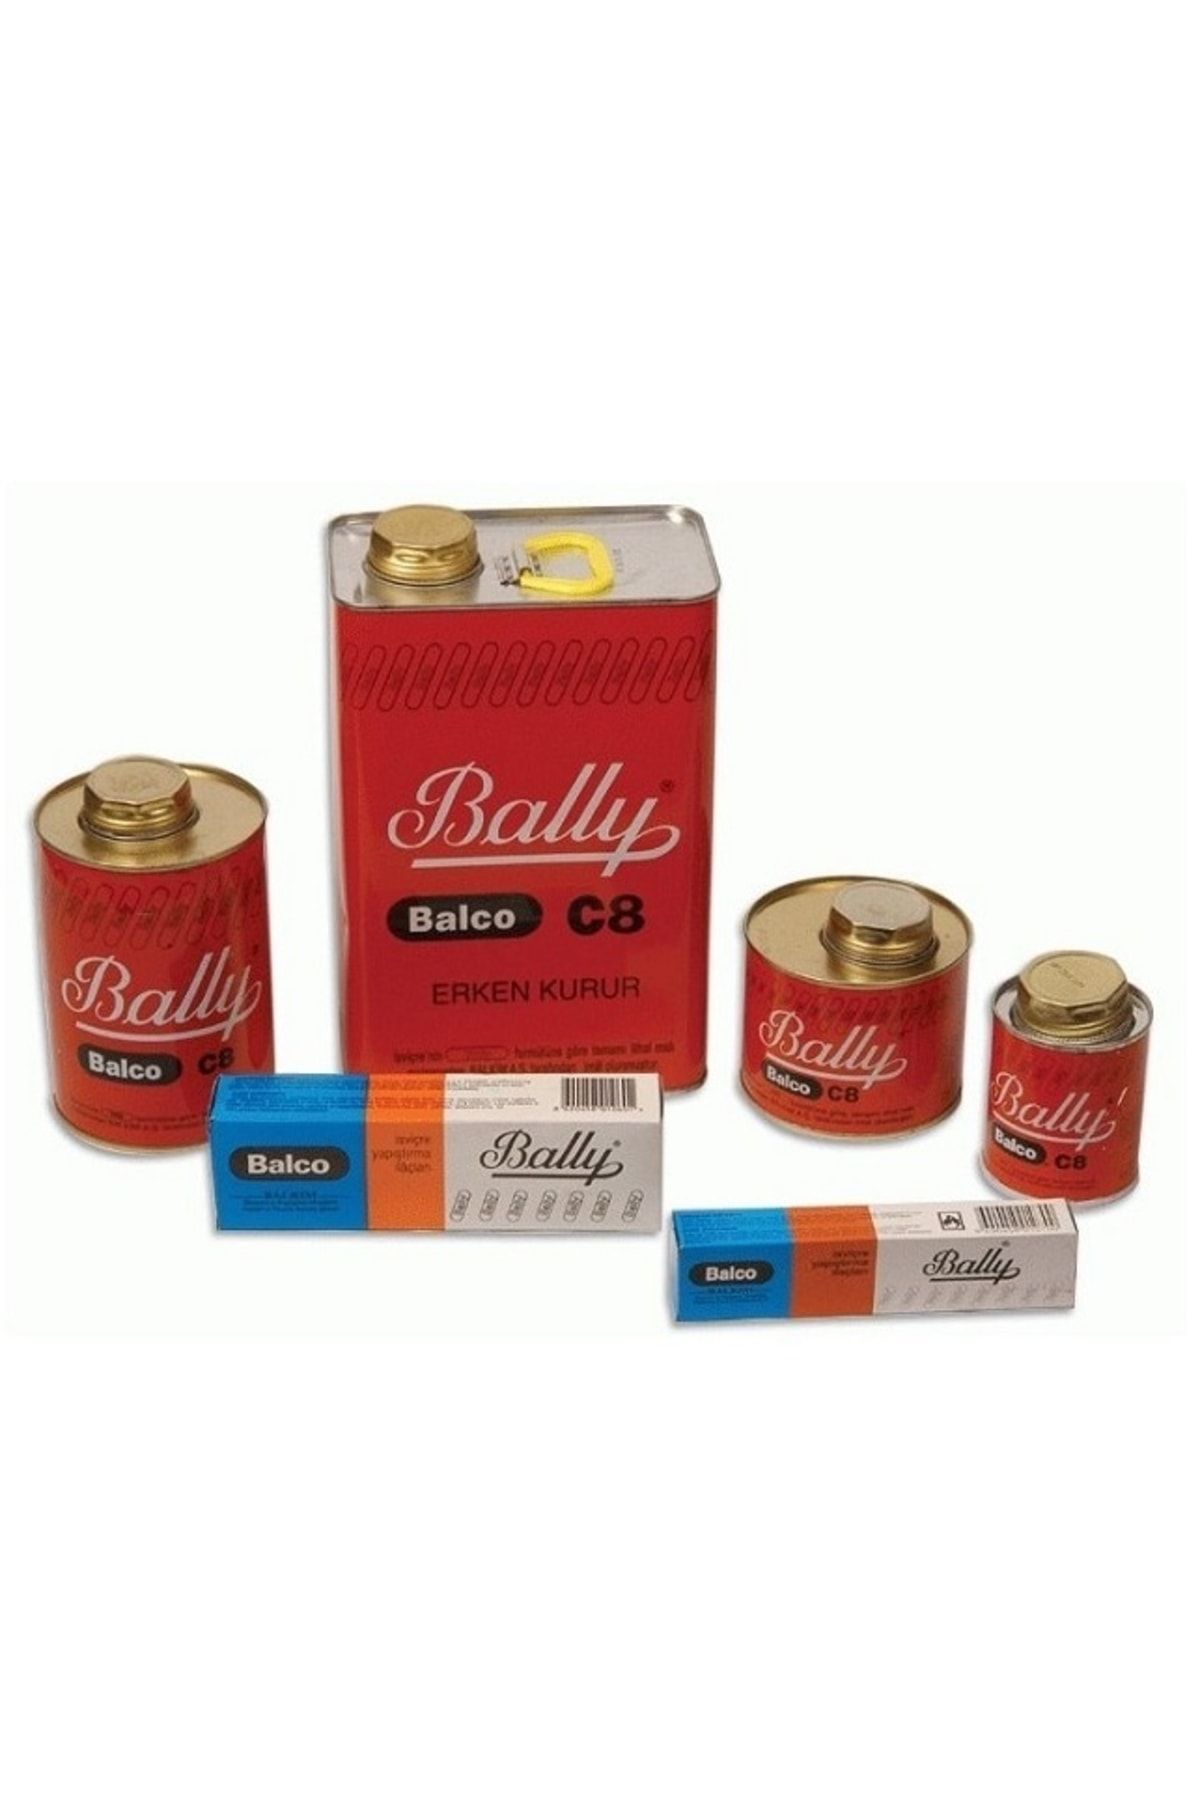 Bally 850 gr Yapıştırıcı Tutkal Genel Amaçlı Bali C8 Balco